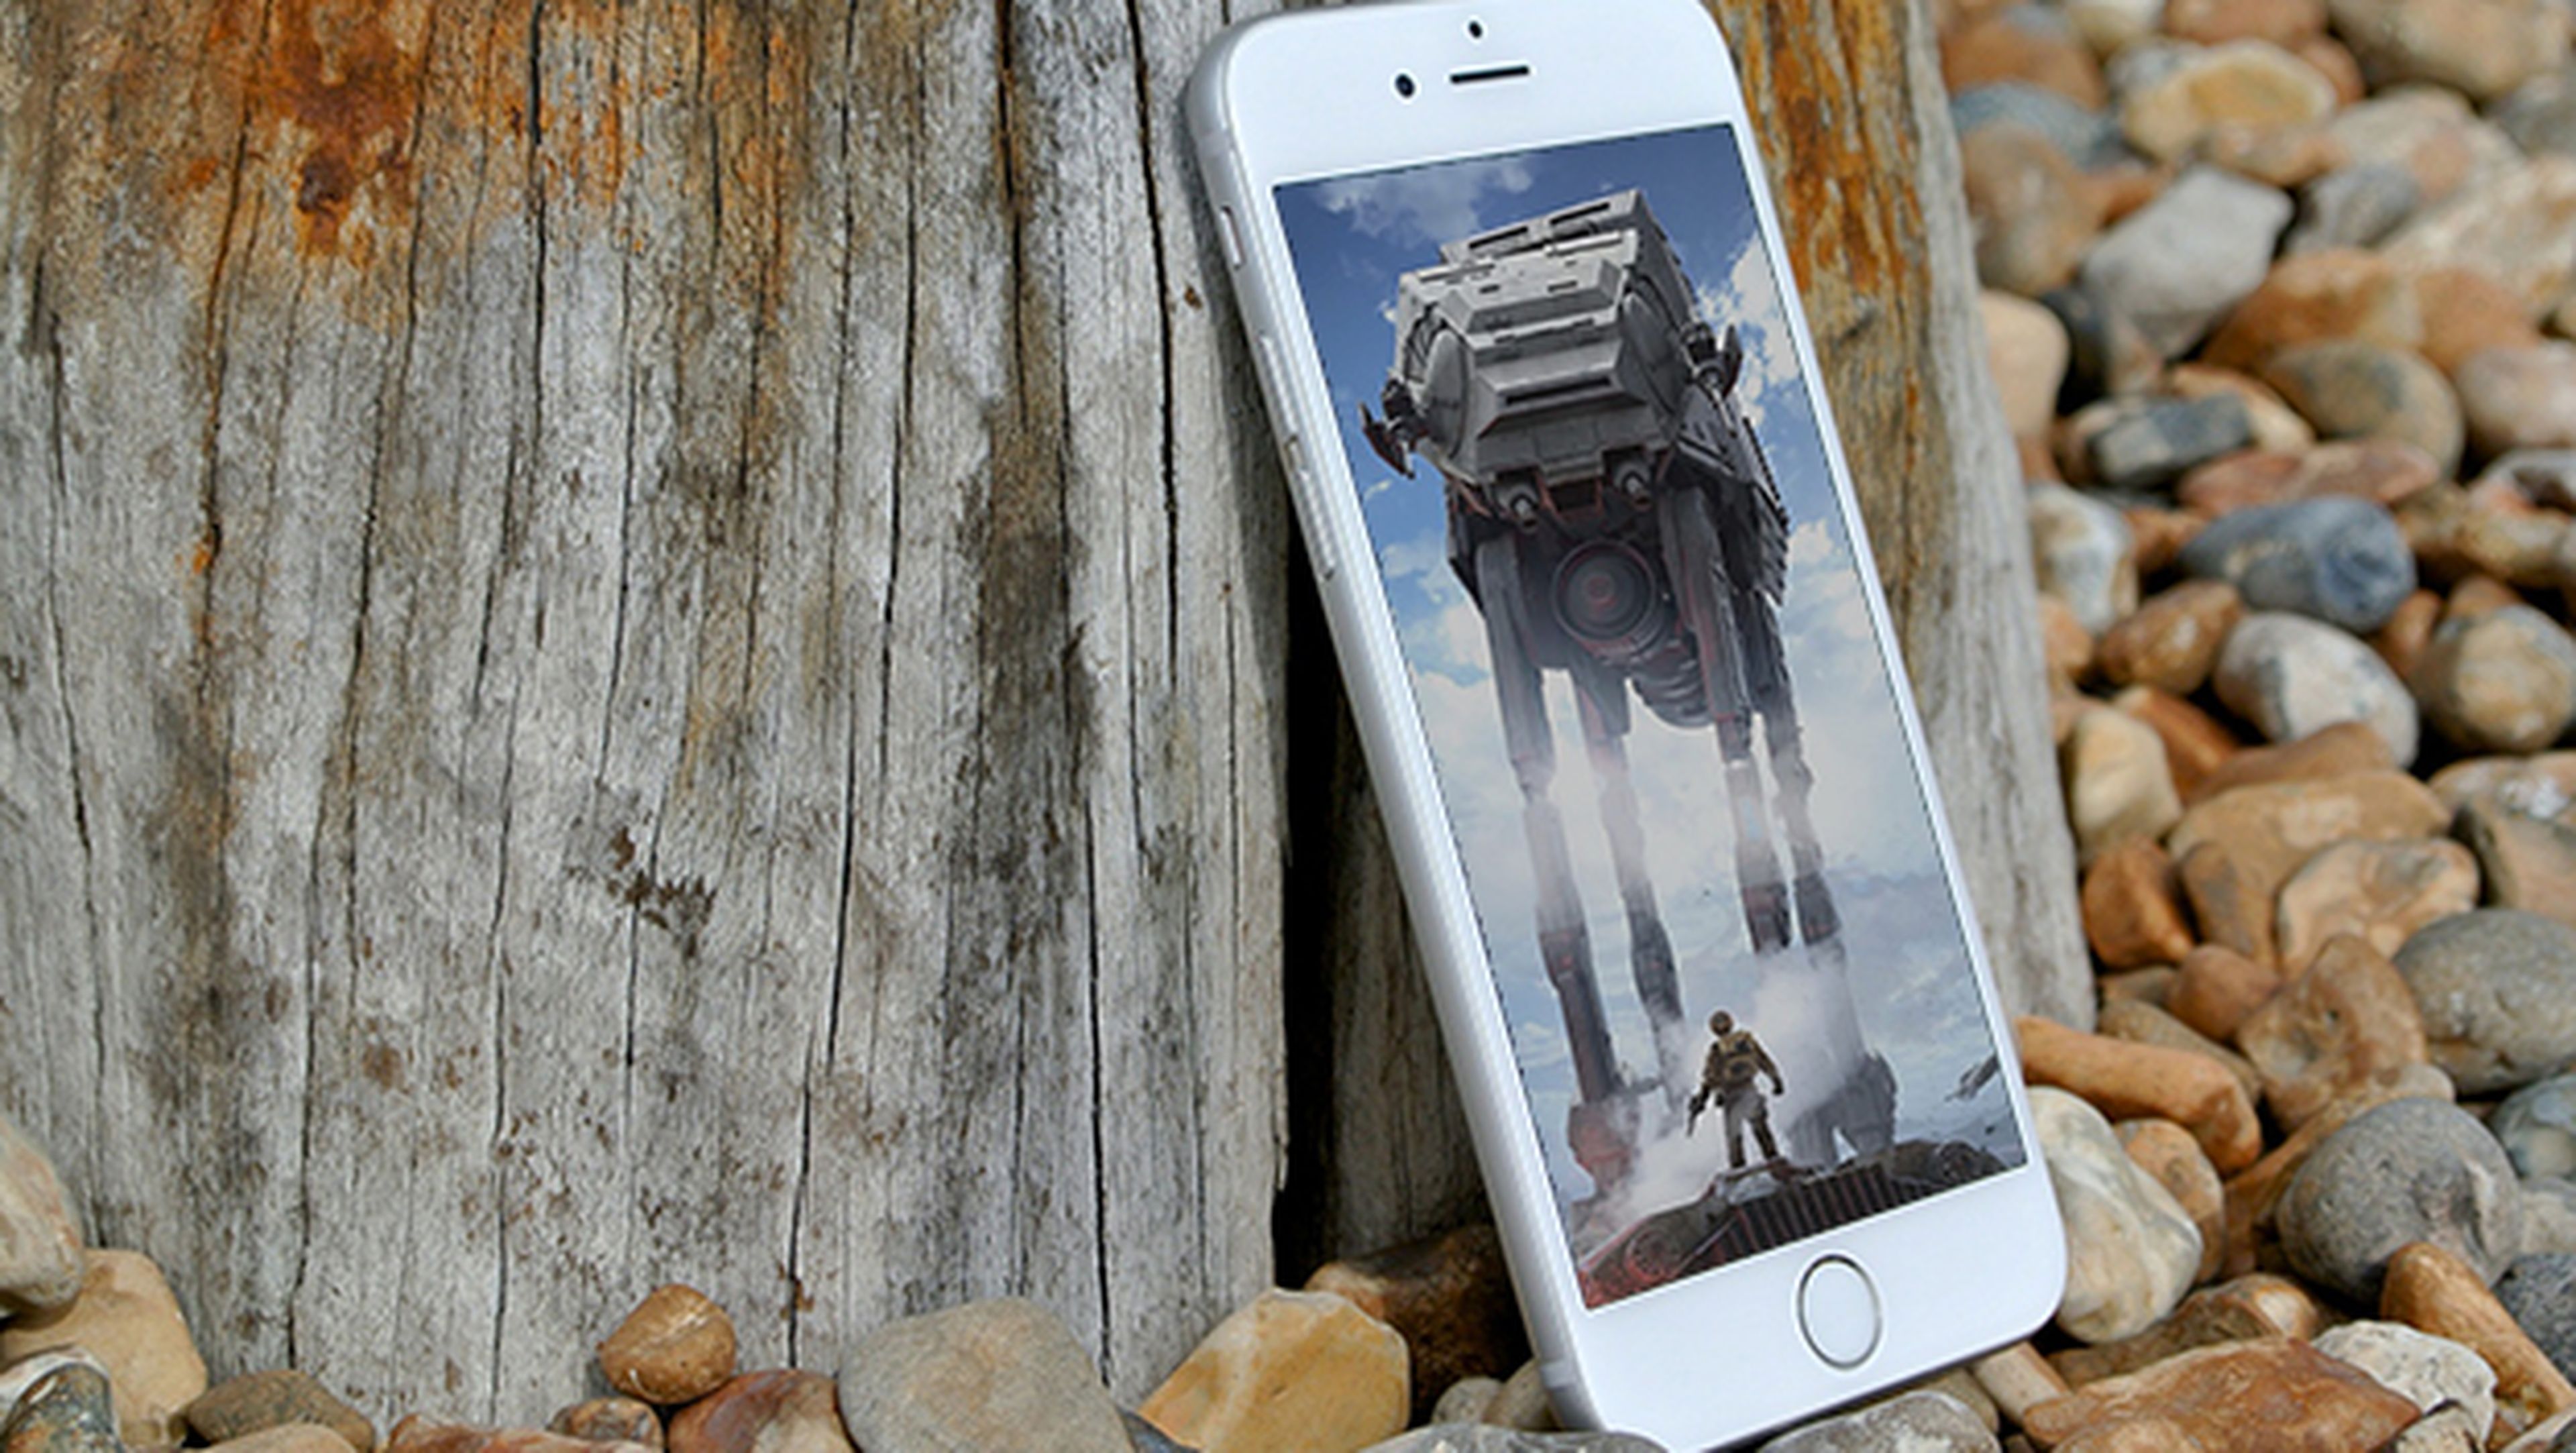 Los mejores fondos de pantalla o wallpapers de Star Wars para iPhone gratis para descargar